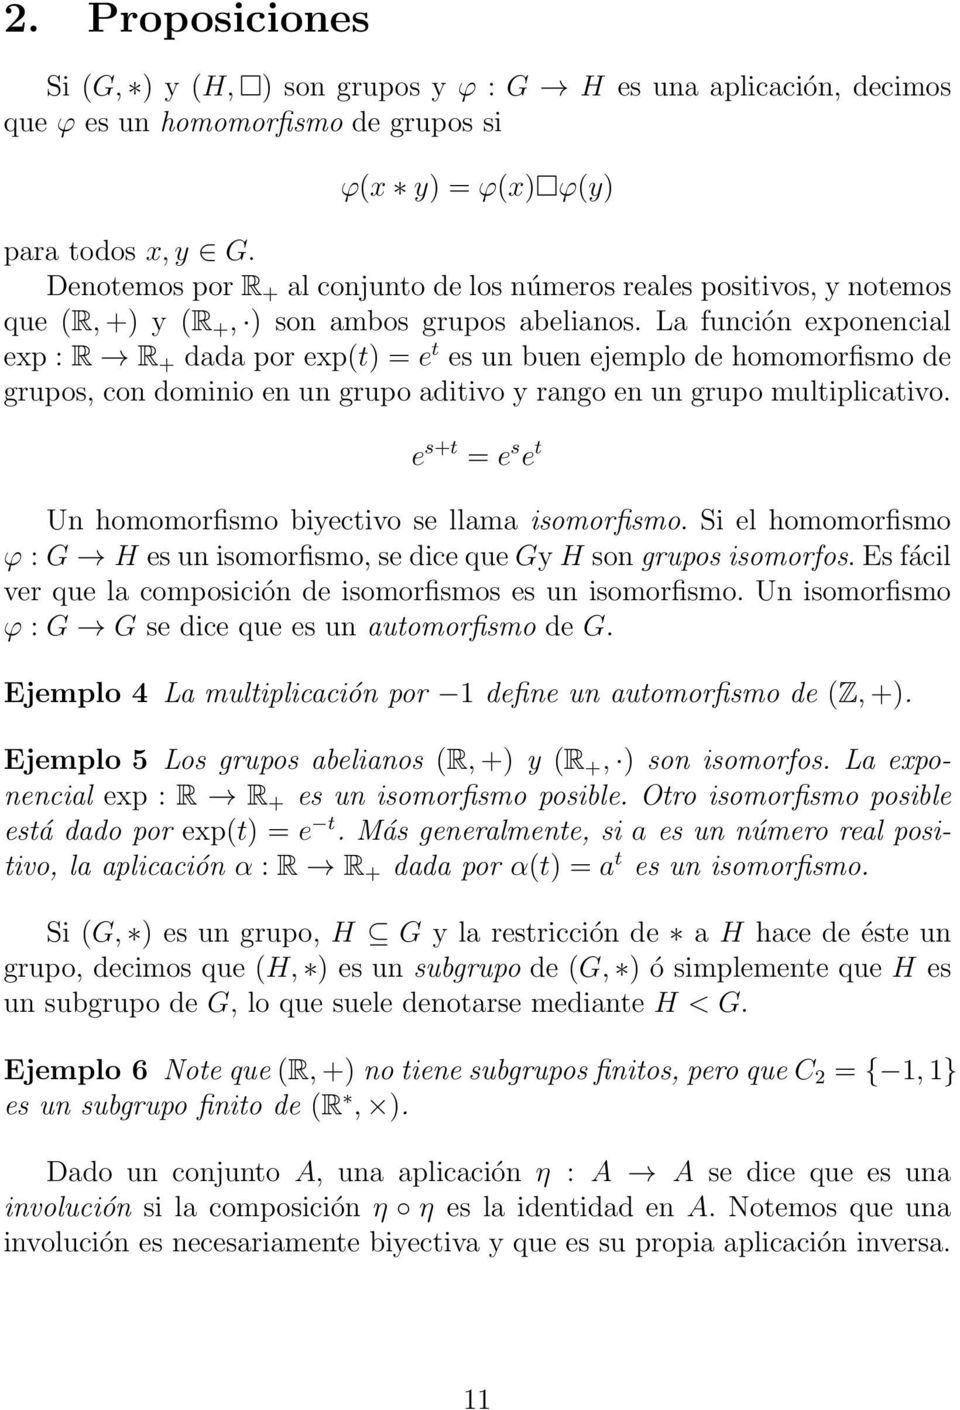 La función exponencial exp : R R + dada por exp(t) = e t es un buen ejemplo de homomorfismo de grupos, con dominio en un grupo aditivo y rango en un grupo multiplicativo.